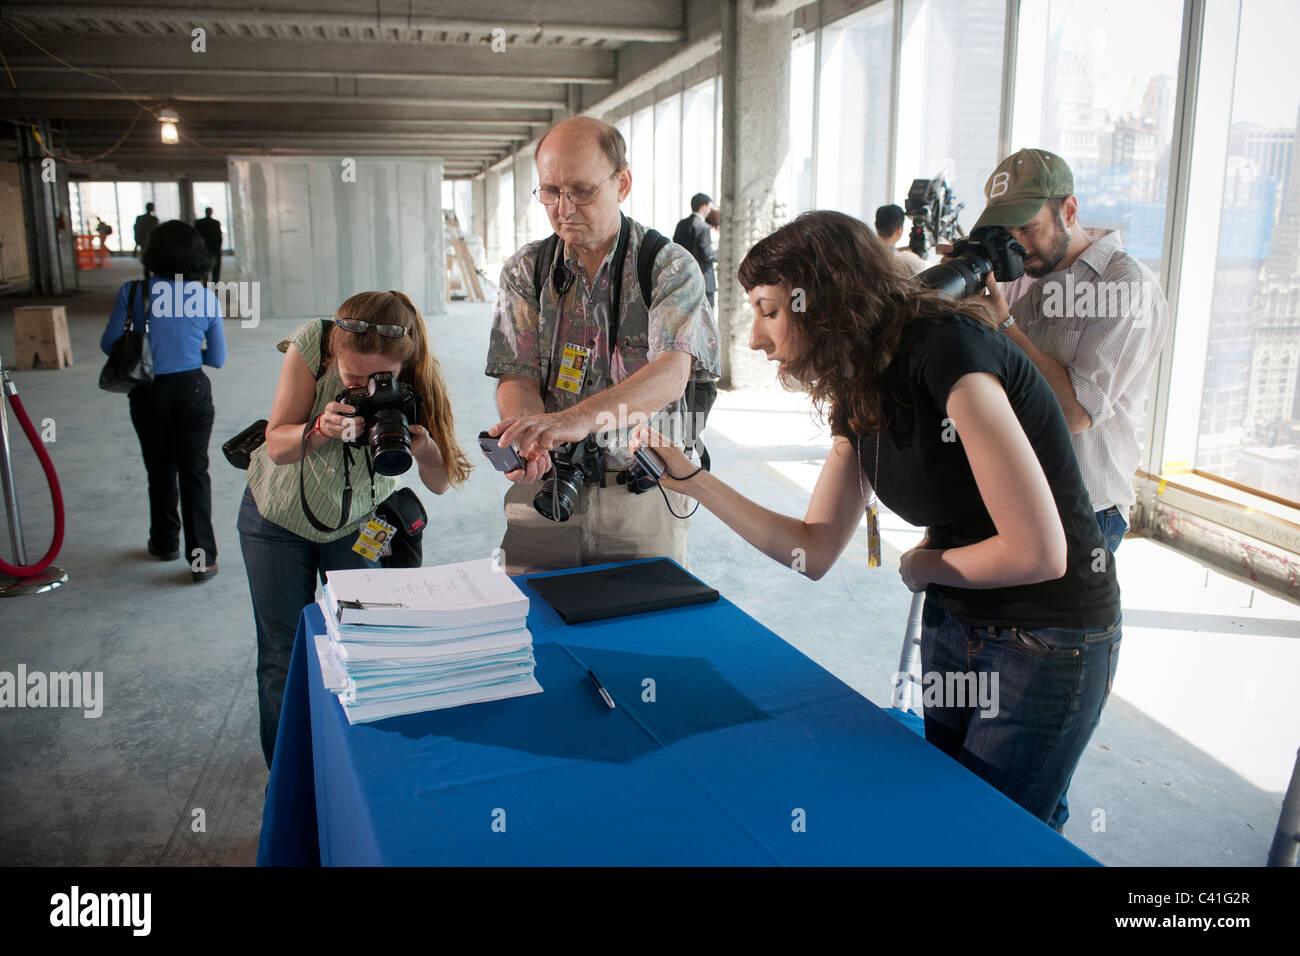 Los fotógrafos fotografiar el contrato de arrendamiento entre el editor de la revista Conde Nast y la Autoridad Portuaria de NY&NJ Foto de stock